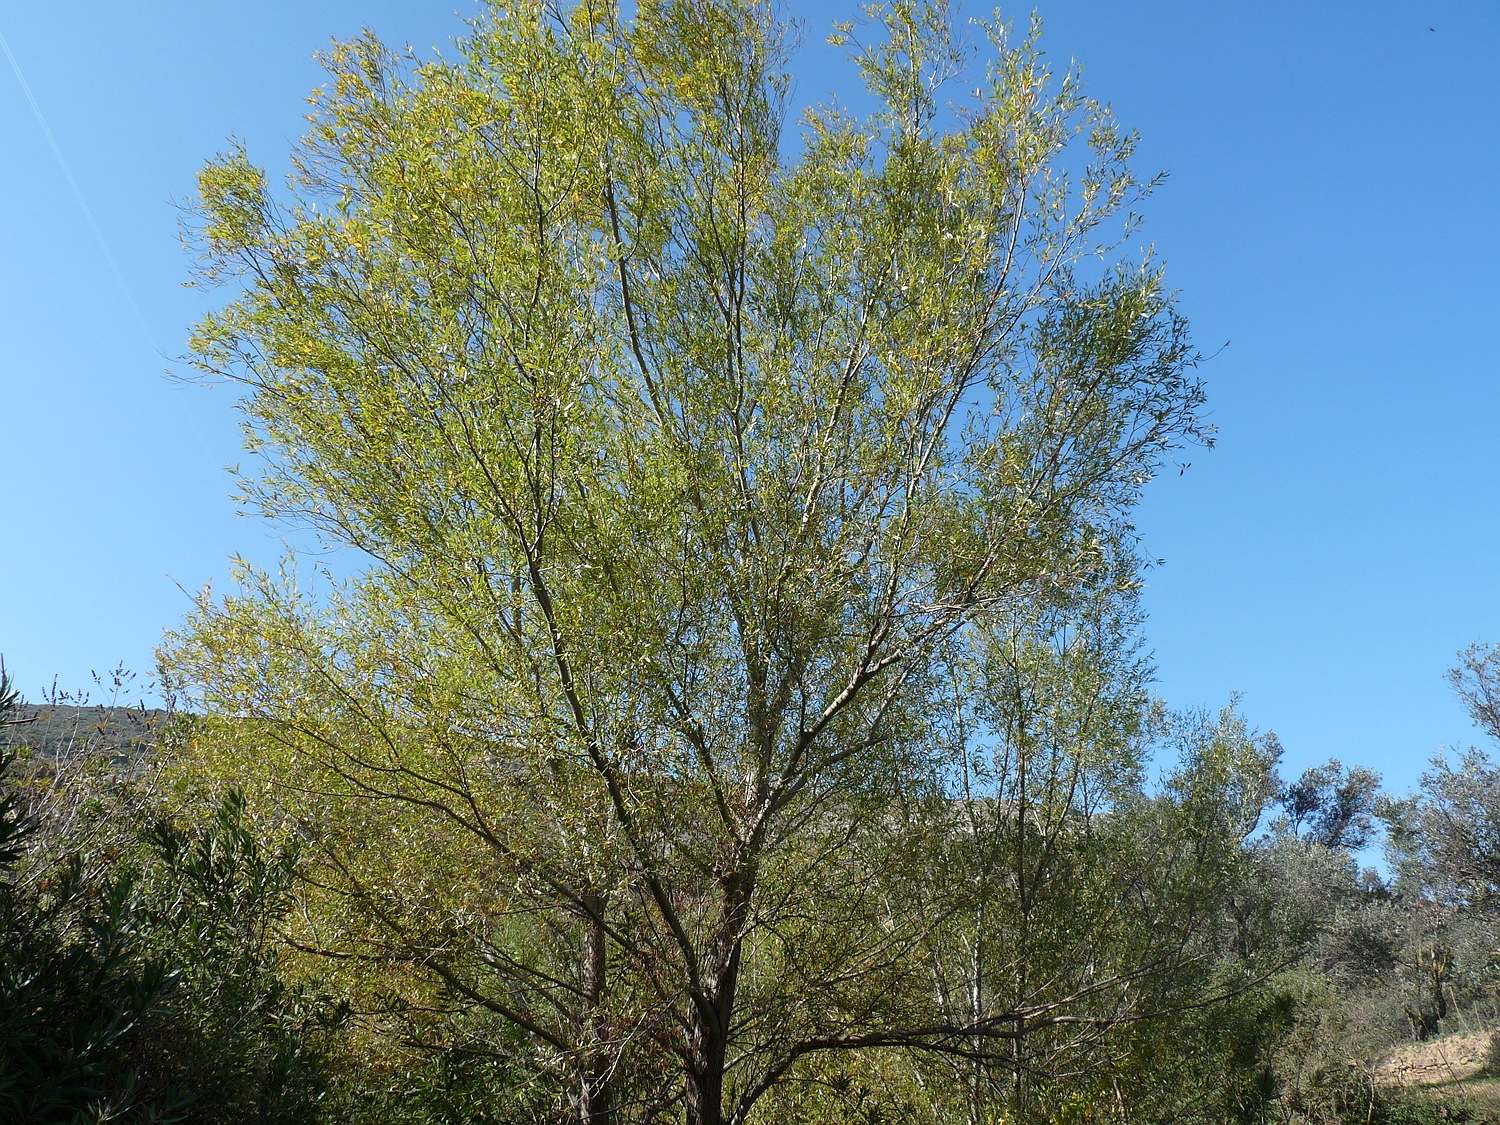 Silber-Weide, Salix alba